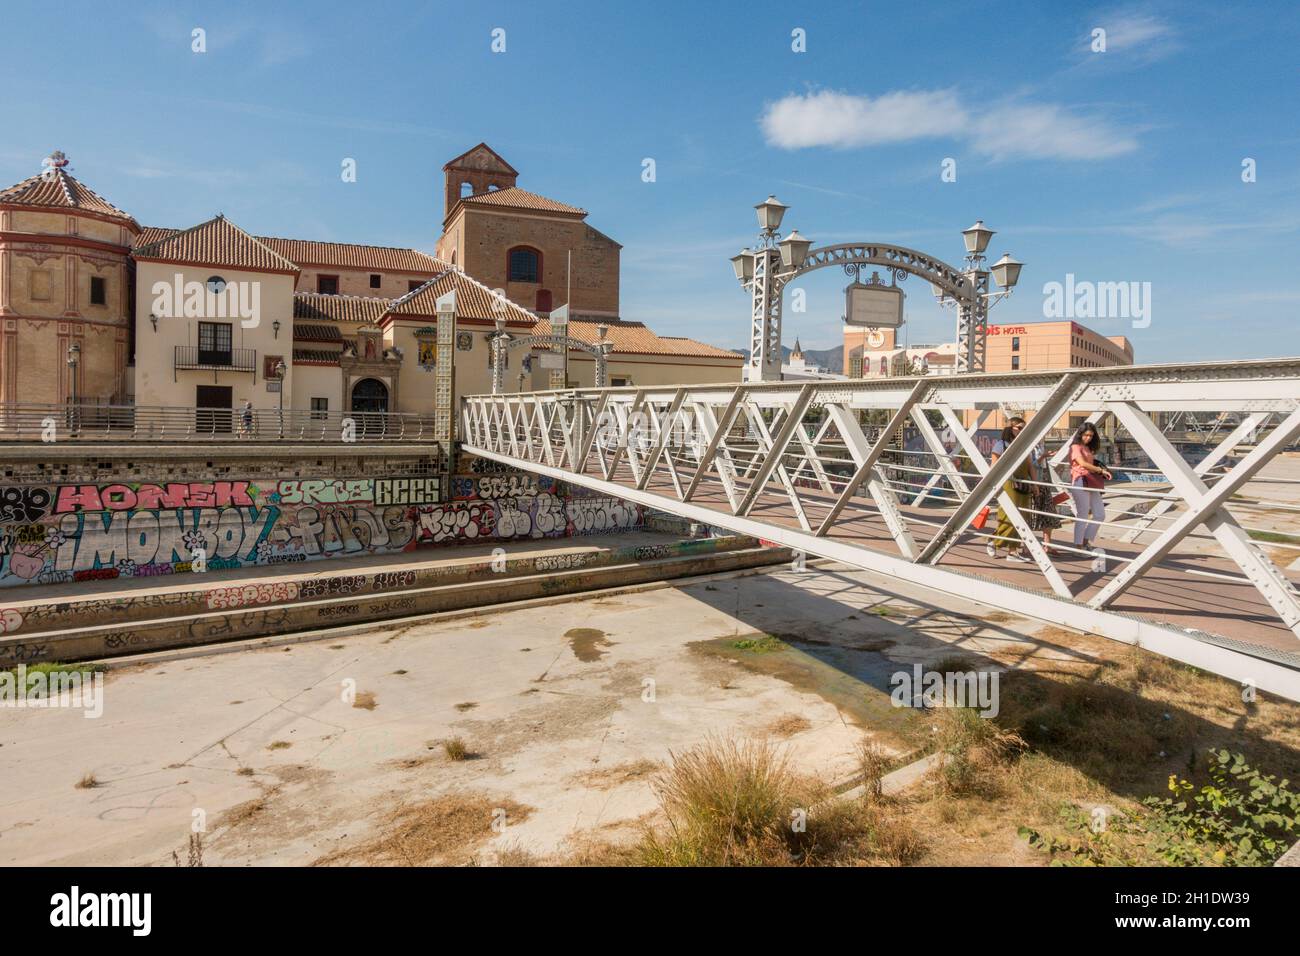 Puente de los Alemanes in centre of Malaga city, crossing Guadalmedina river, Spain. Stock Photo